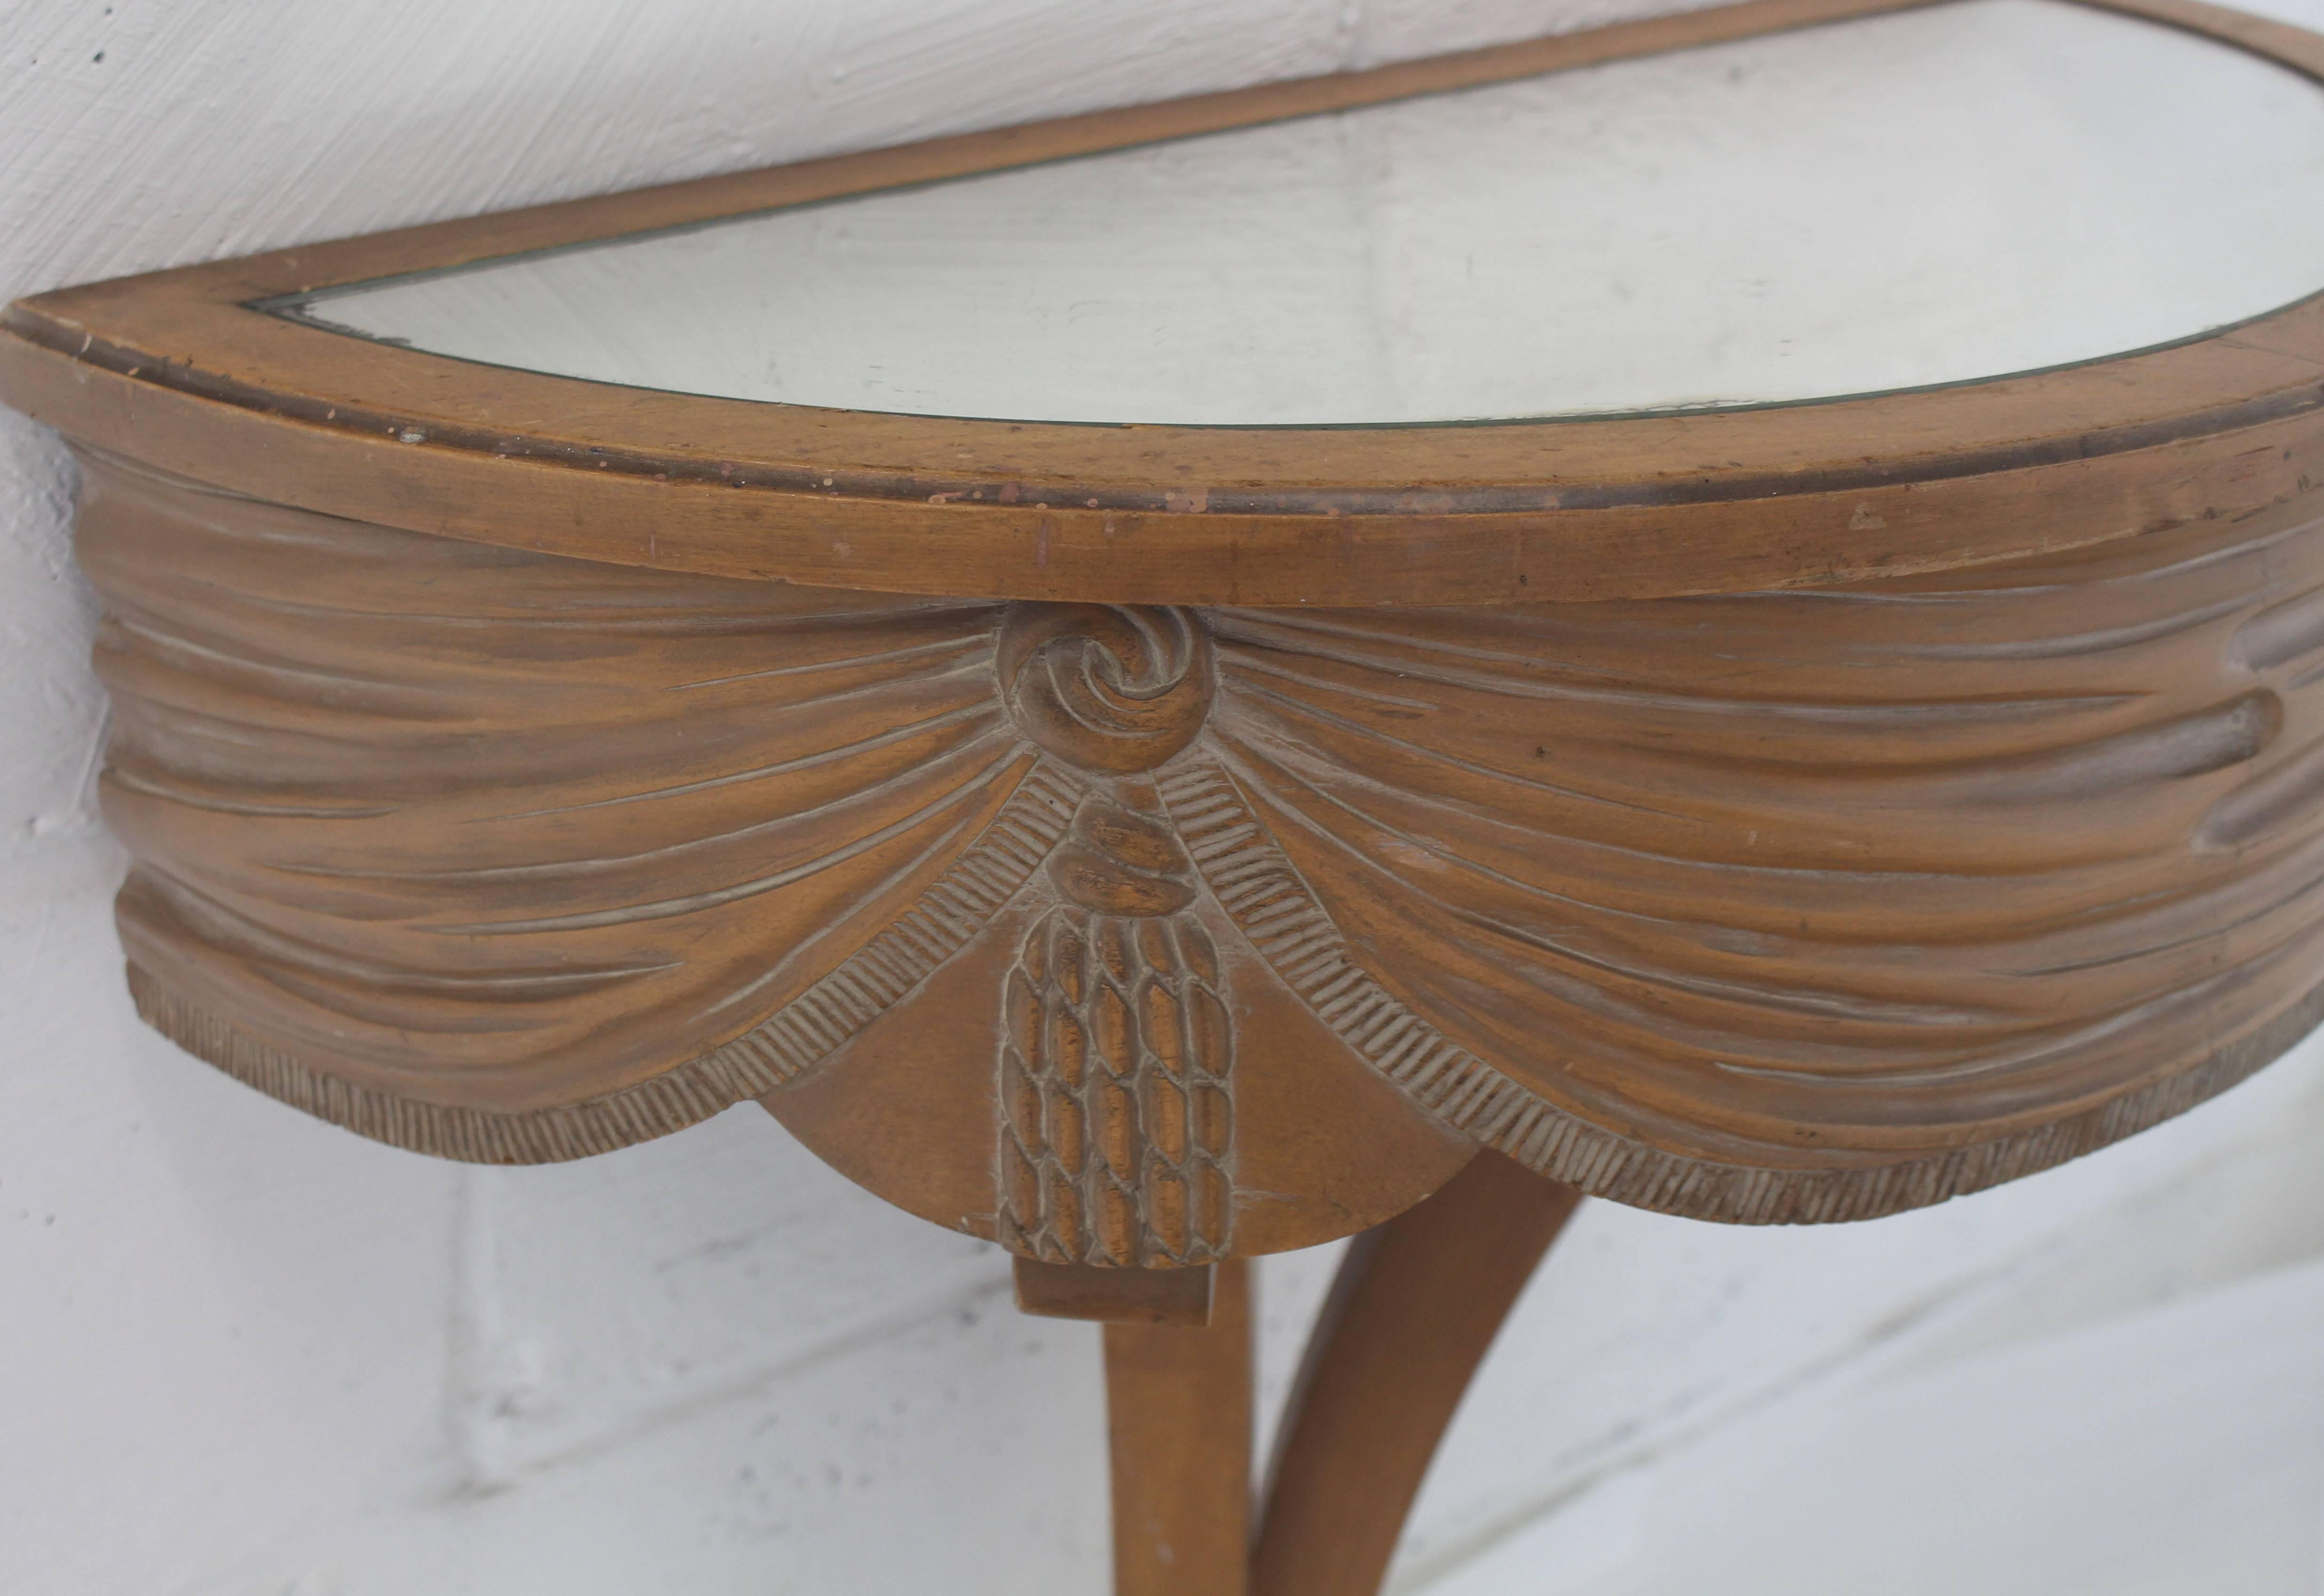 European Art Nouveau Deco Mirror Top Carved Demilune Console Table